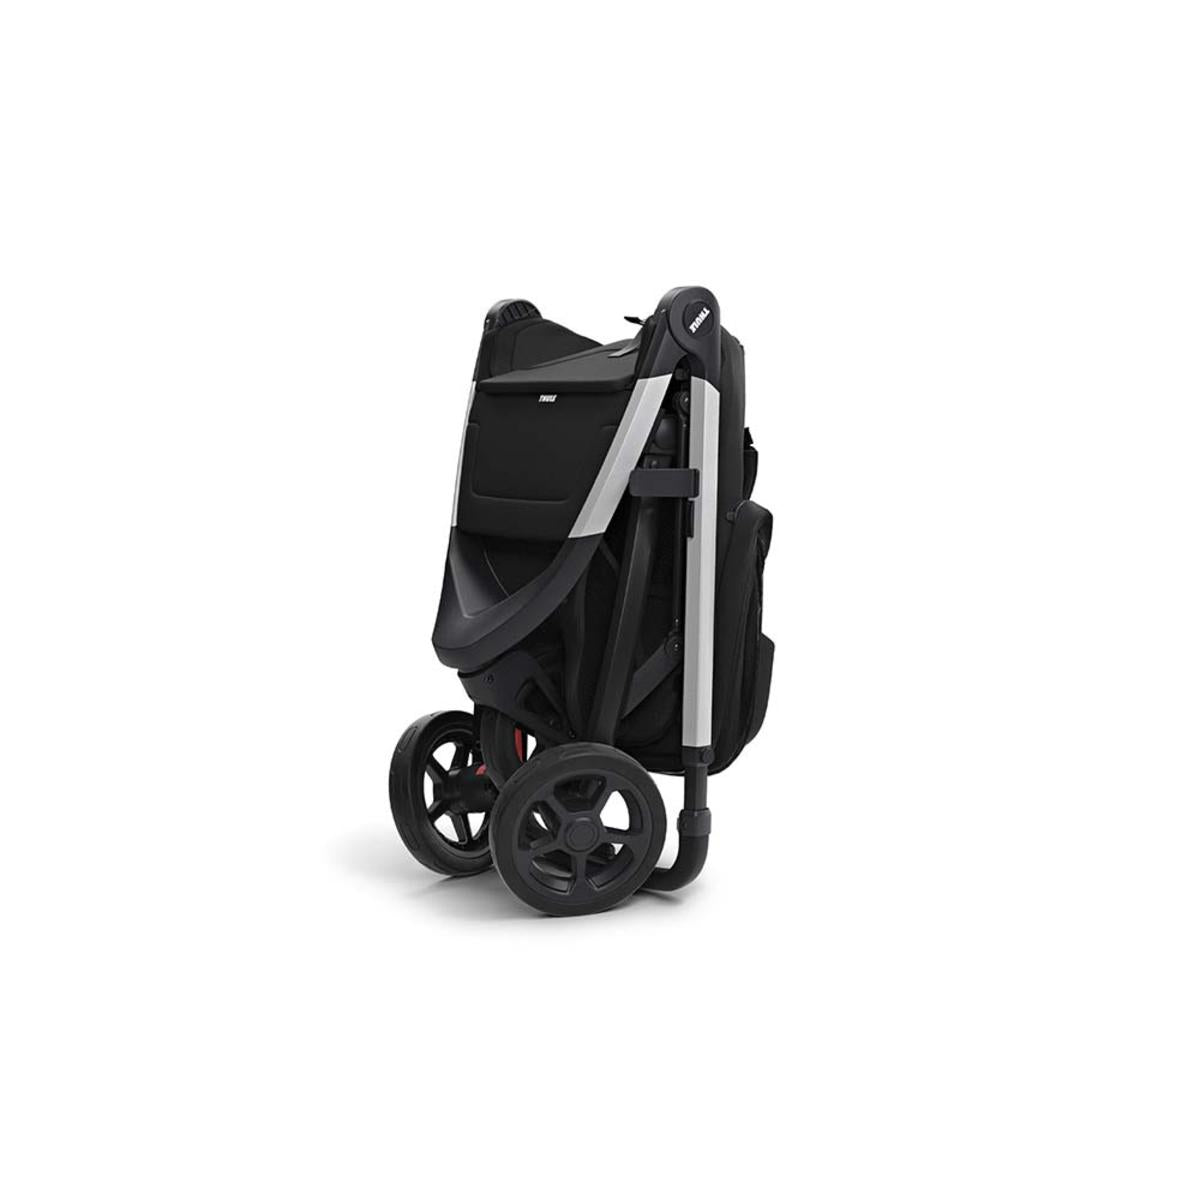 Thule Spring Flexible Stroller - Aluminum/Majolica Blue